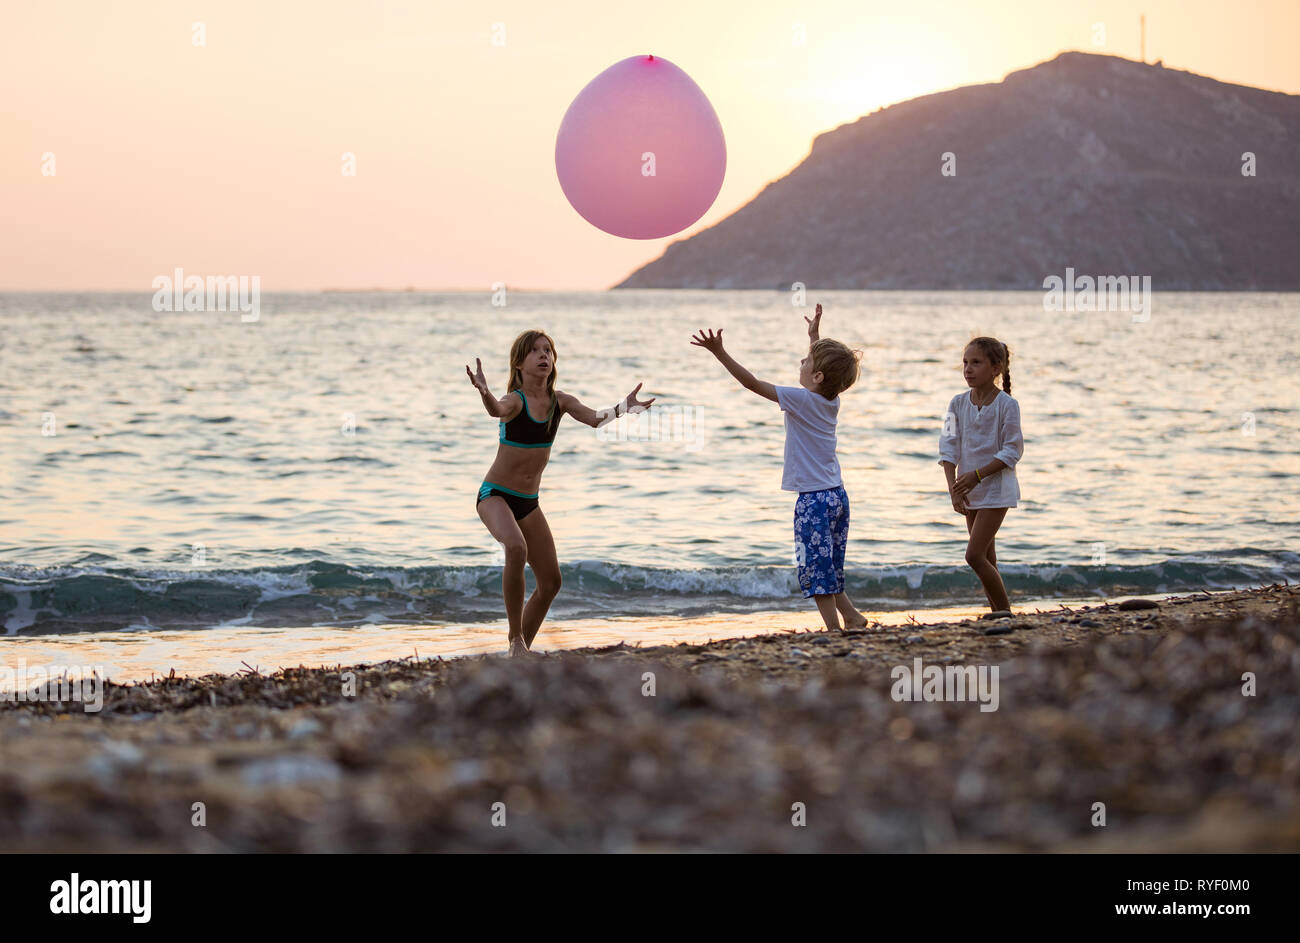 Trois jeunes enfants jouant avec un énorme ballon rose sur la plage au coucher du soleil Banque D'Images